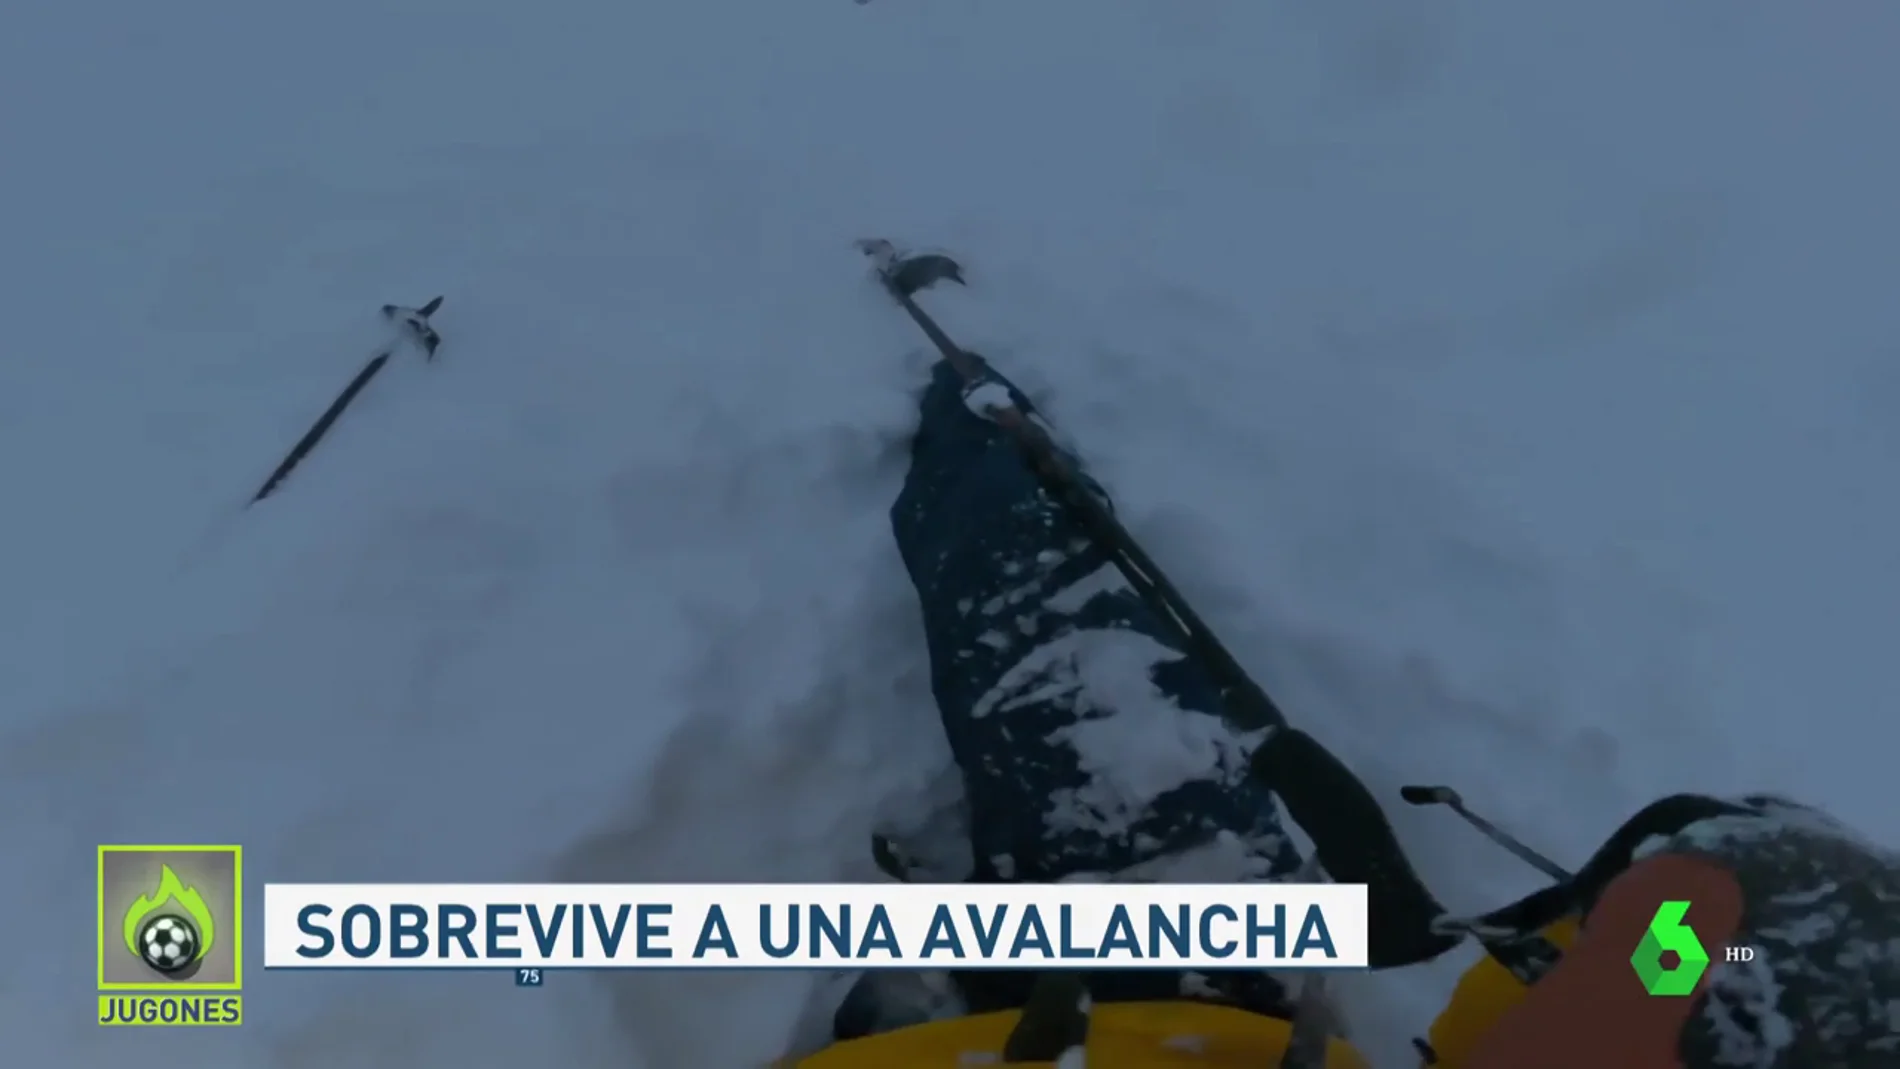 El angustioso momento en el que un esquiador queda atrapado en una avalancha